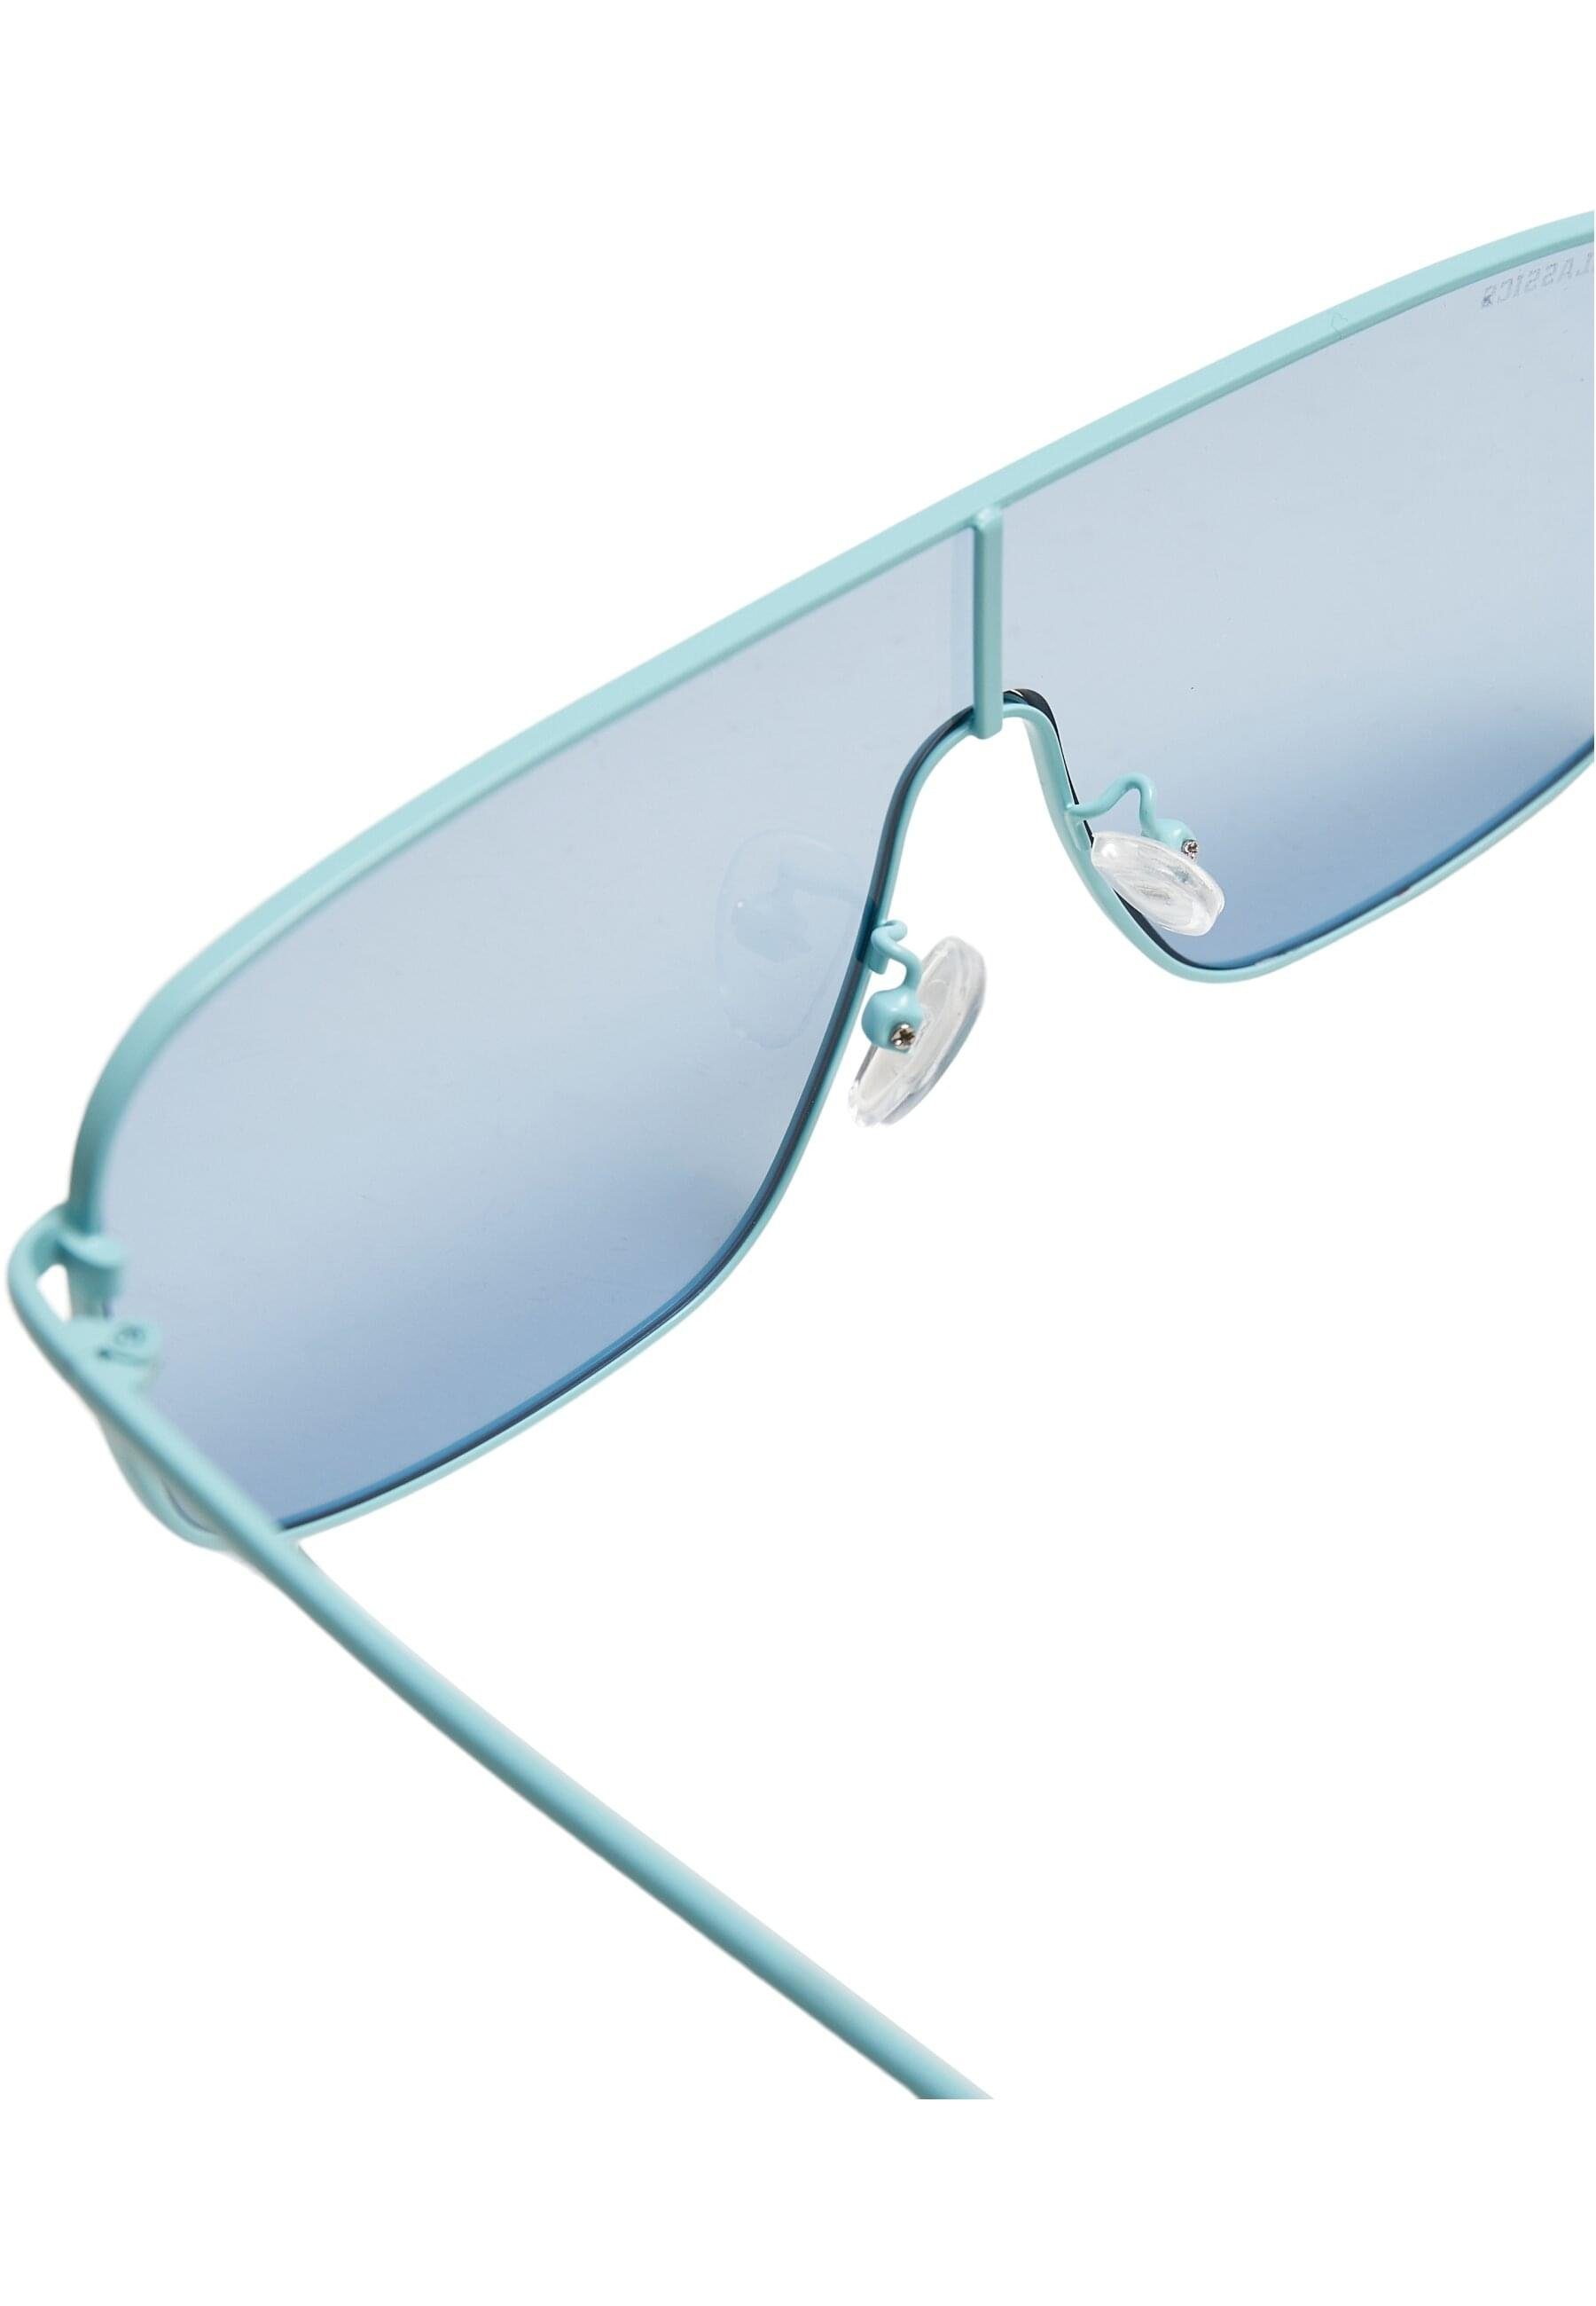 URBAN Sunglasses Sonnenbrille lightblue CLASSICS California Unisex